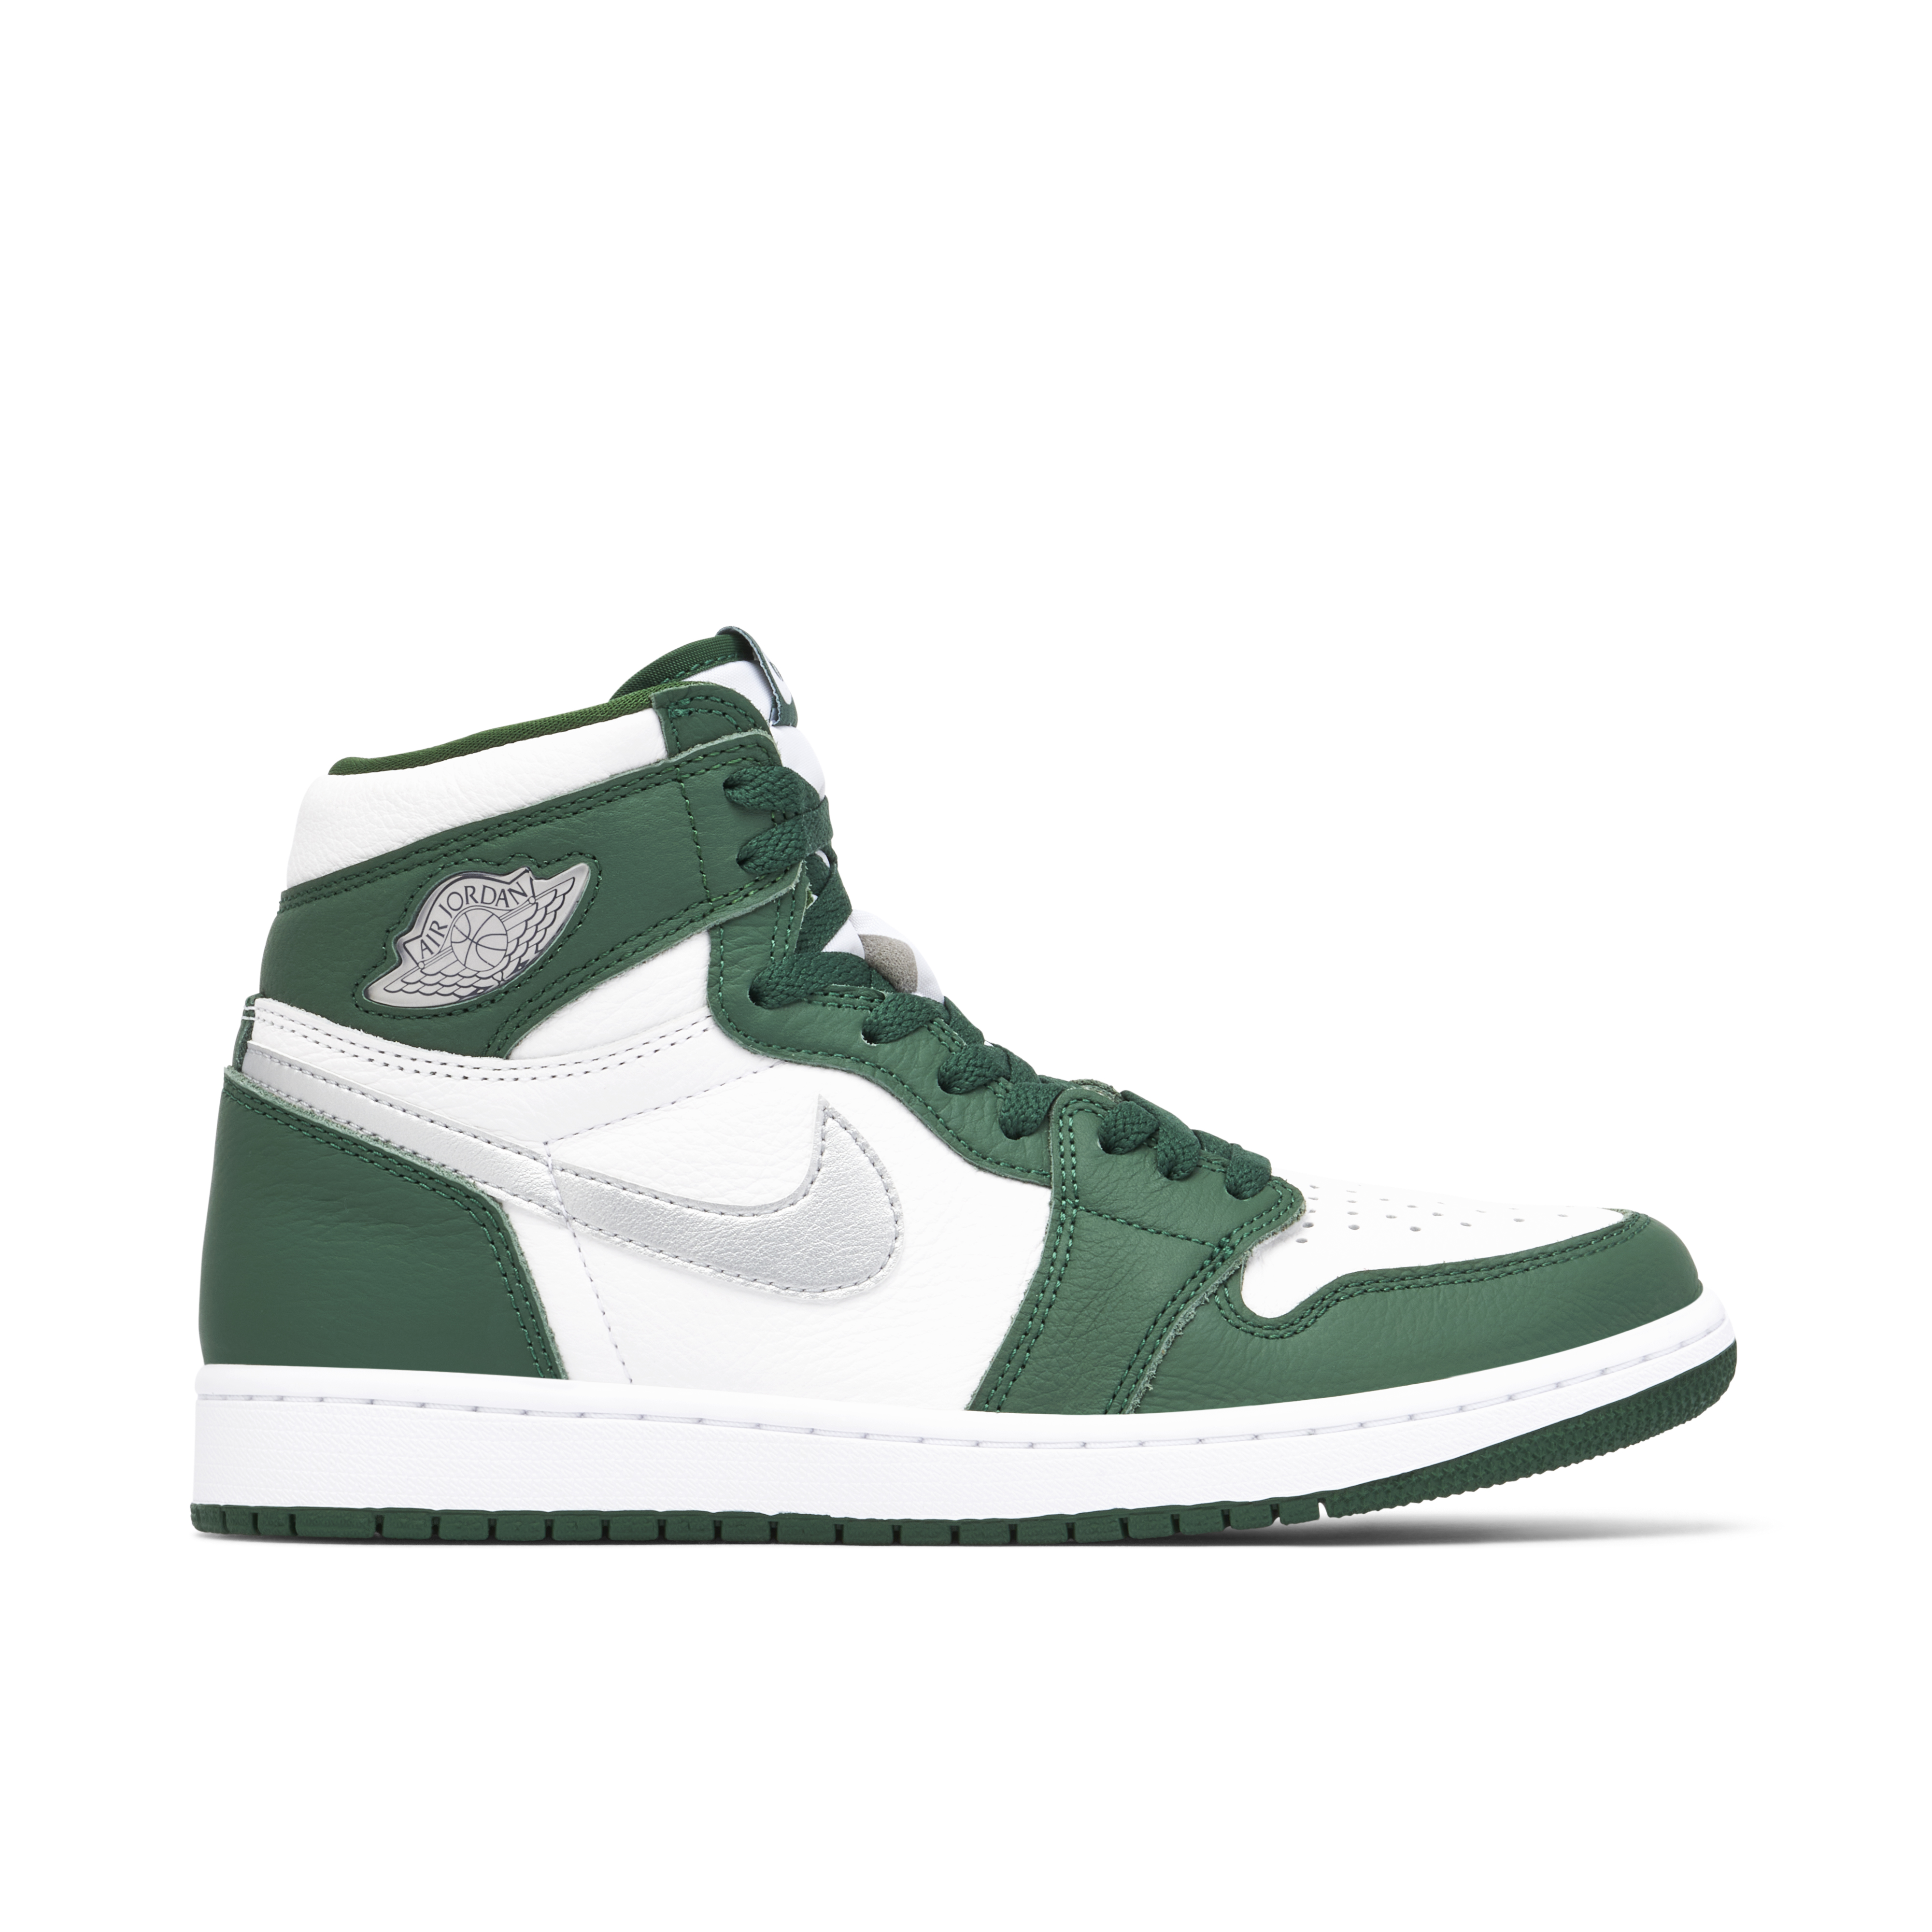 Green Jordans | New Green Air Jordans 